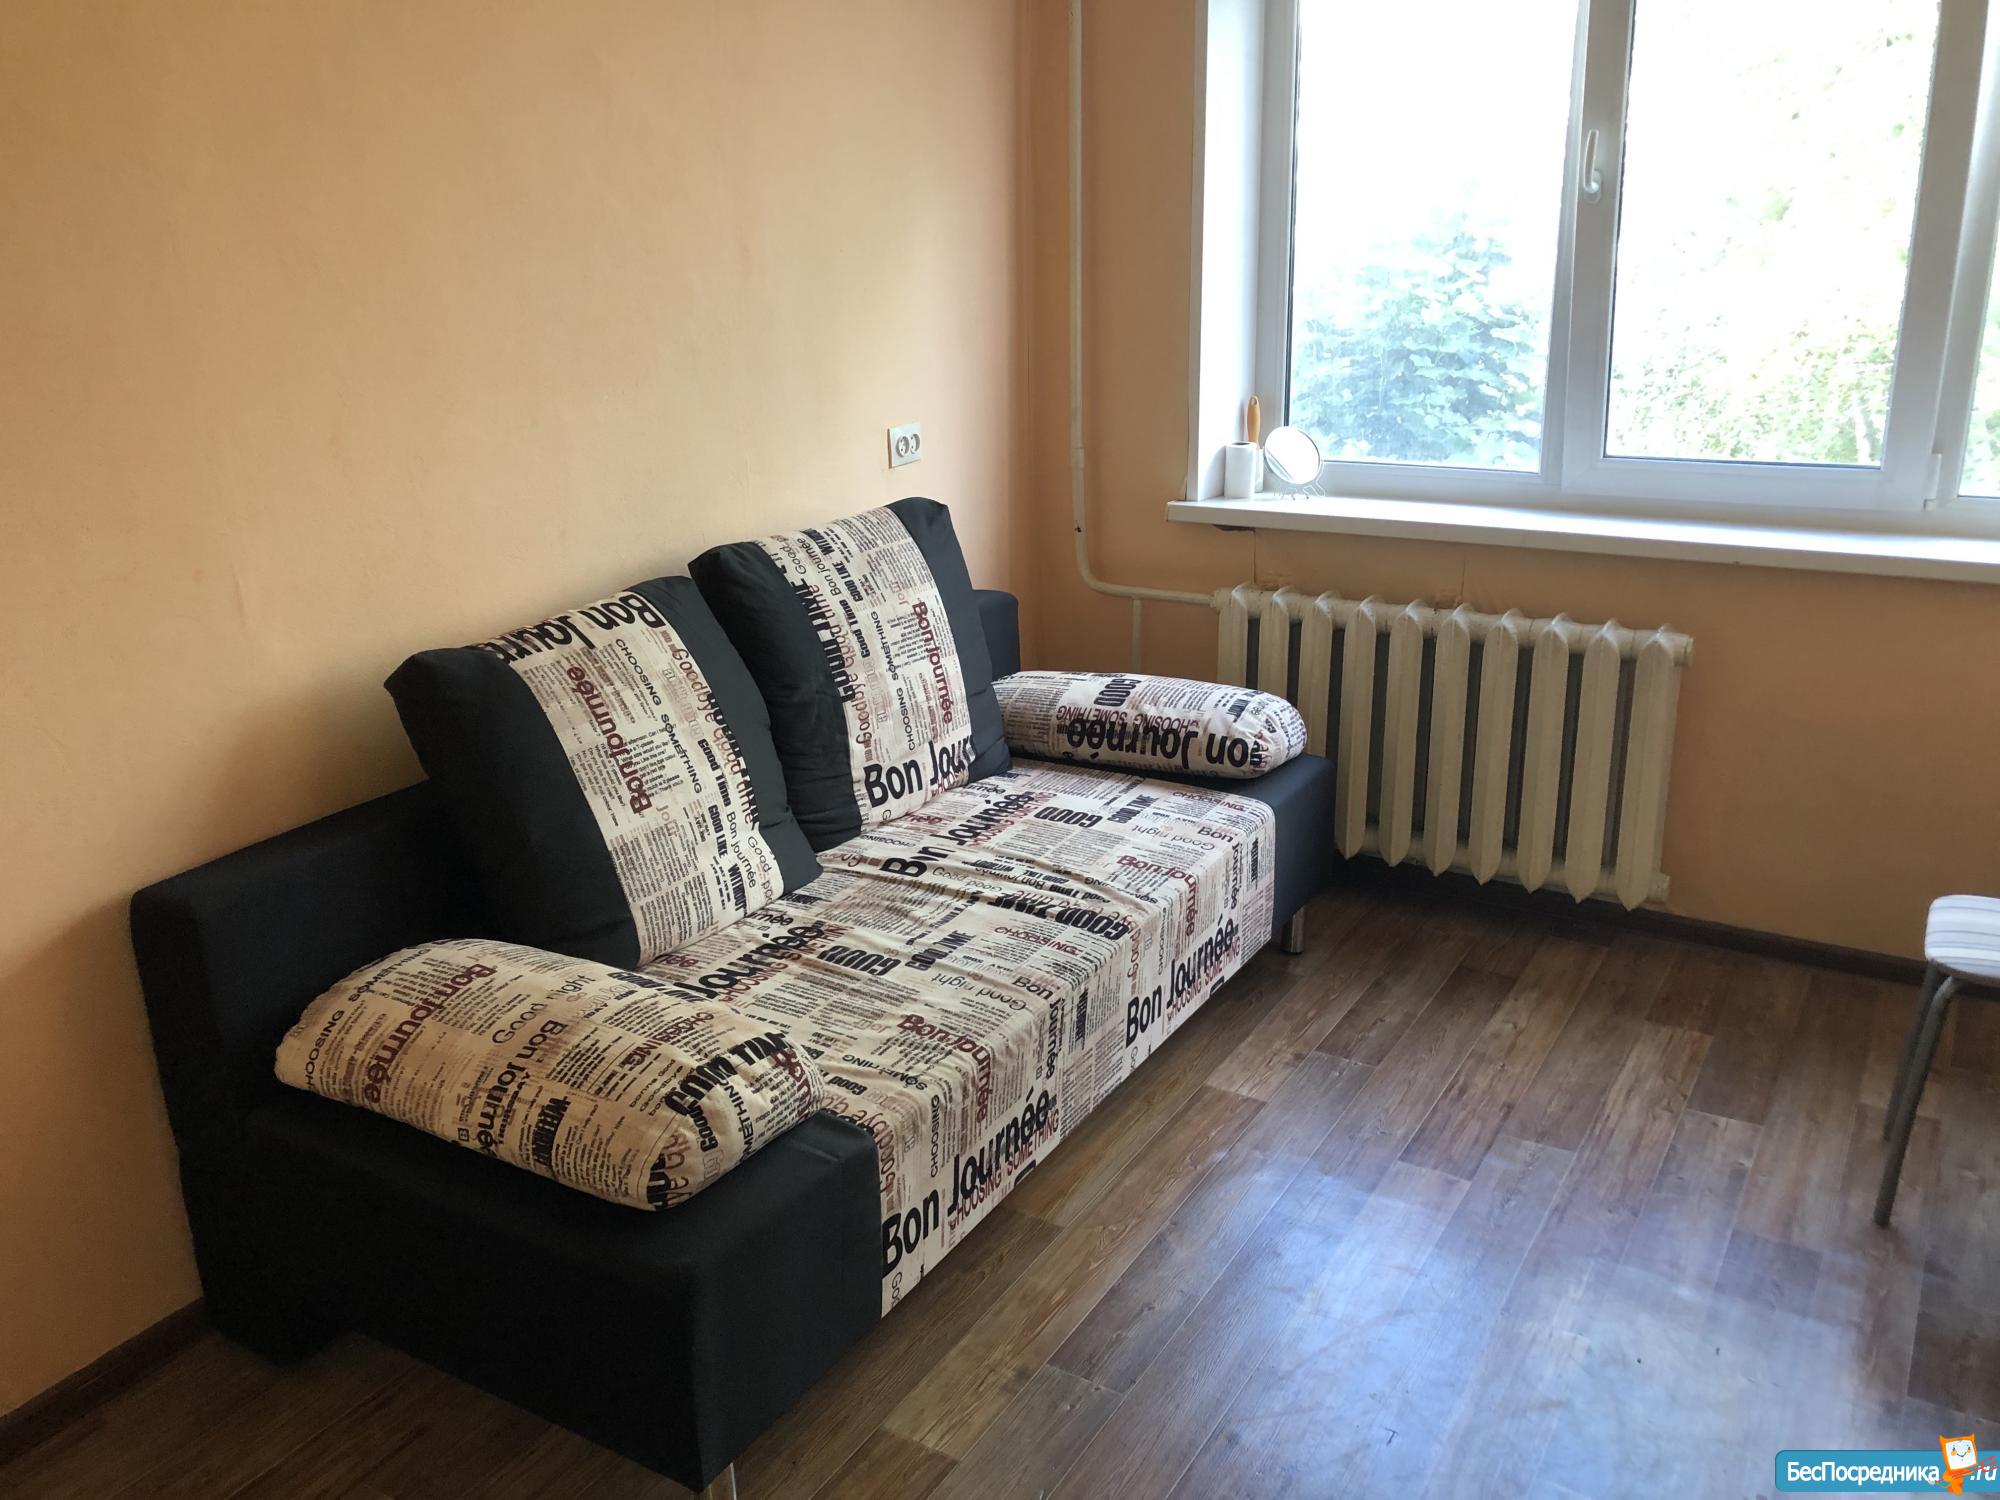 Сниму квартиру без мебели на длительный срок